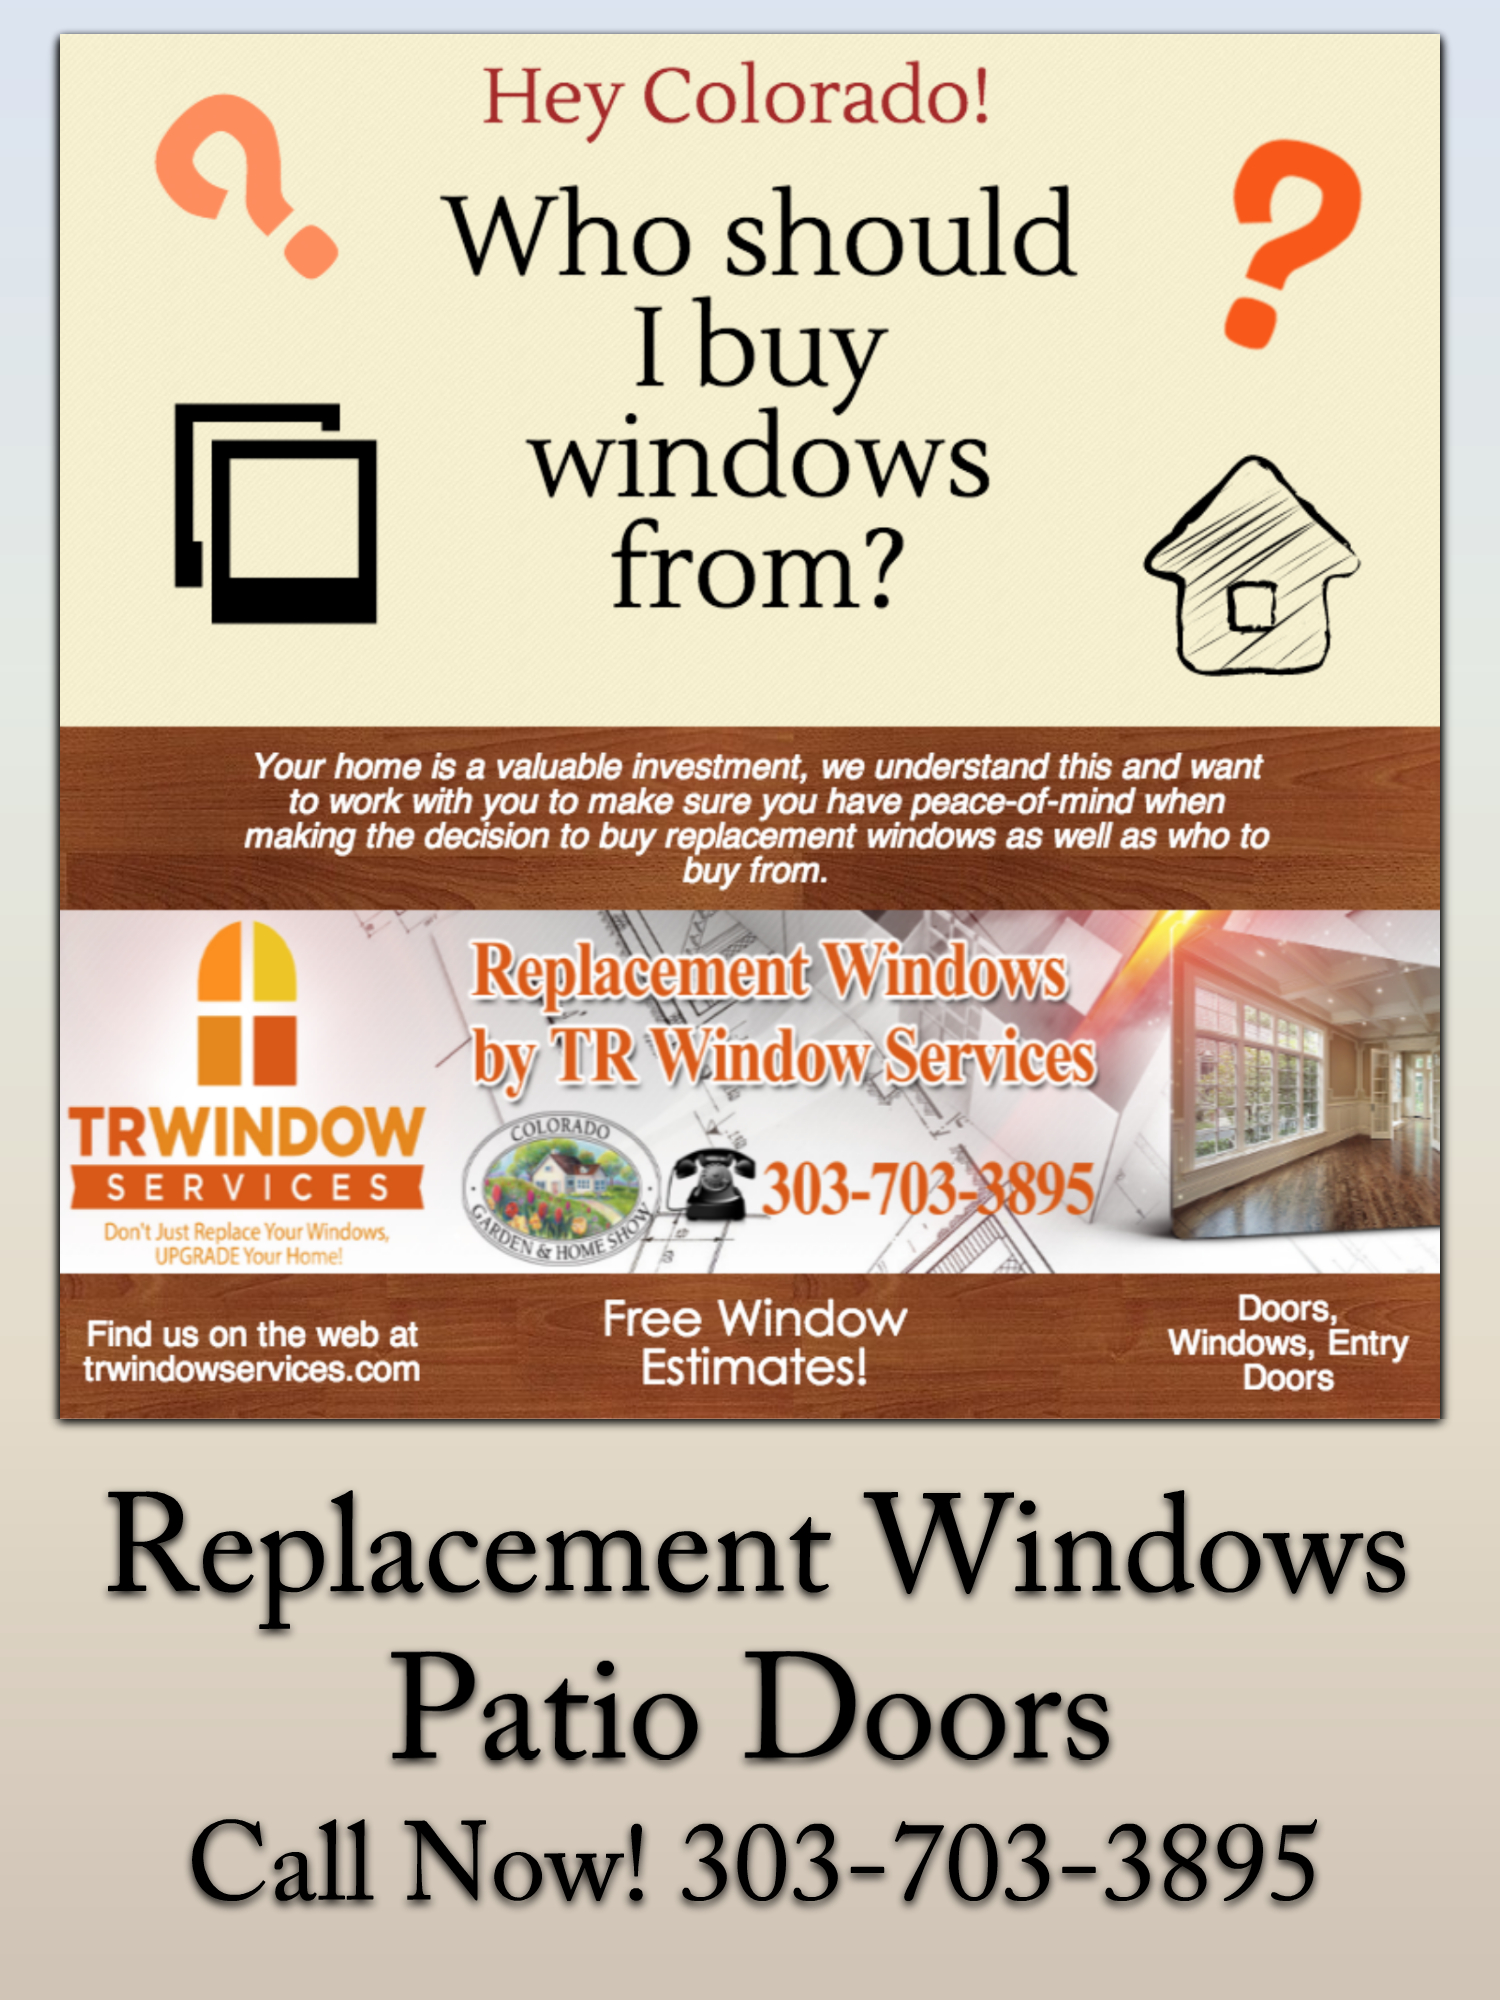 denver replacement windows colorado, denver windows, denver replacement windows blog, denver infographic